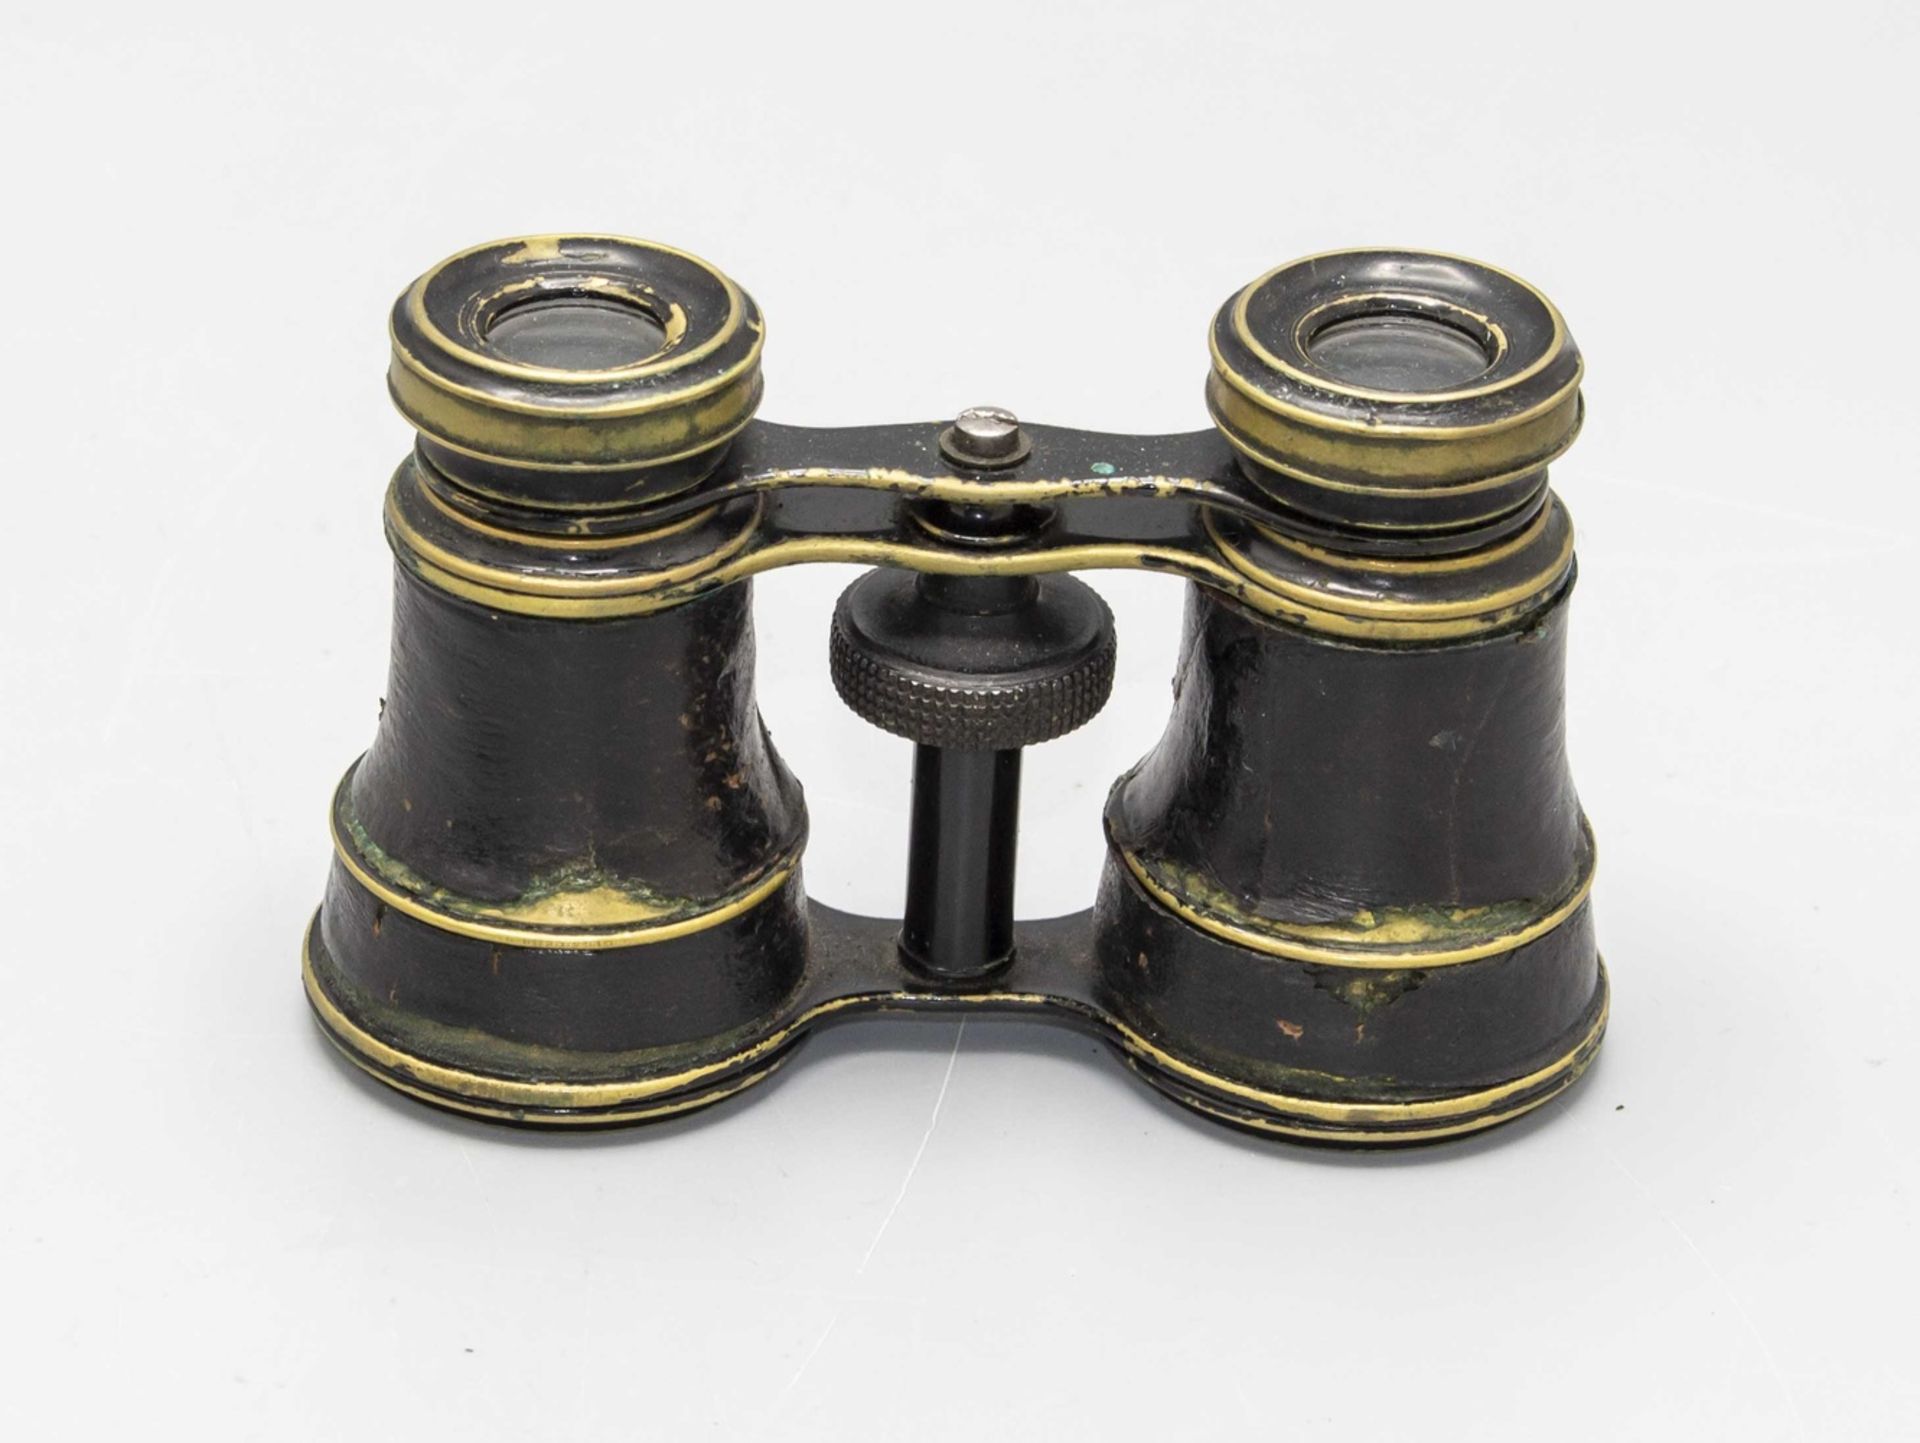 Fernglas mit Originaletu / Binoculars mit box, 1. Hälfte 20. Jh. - Bild 2 aus 4